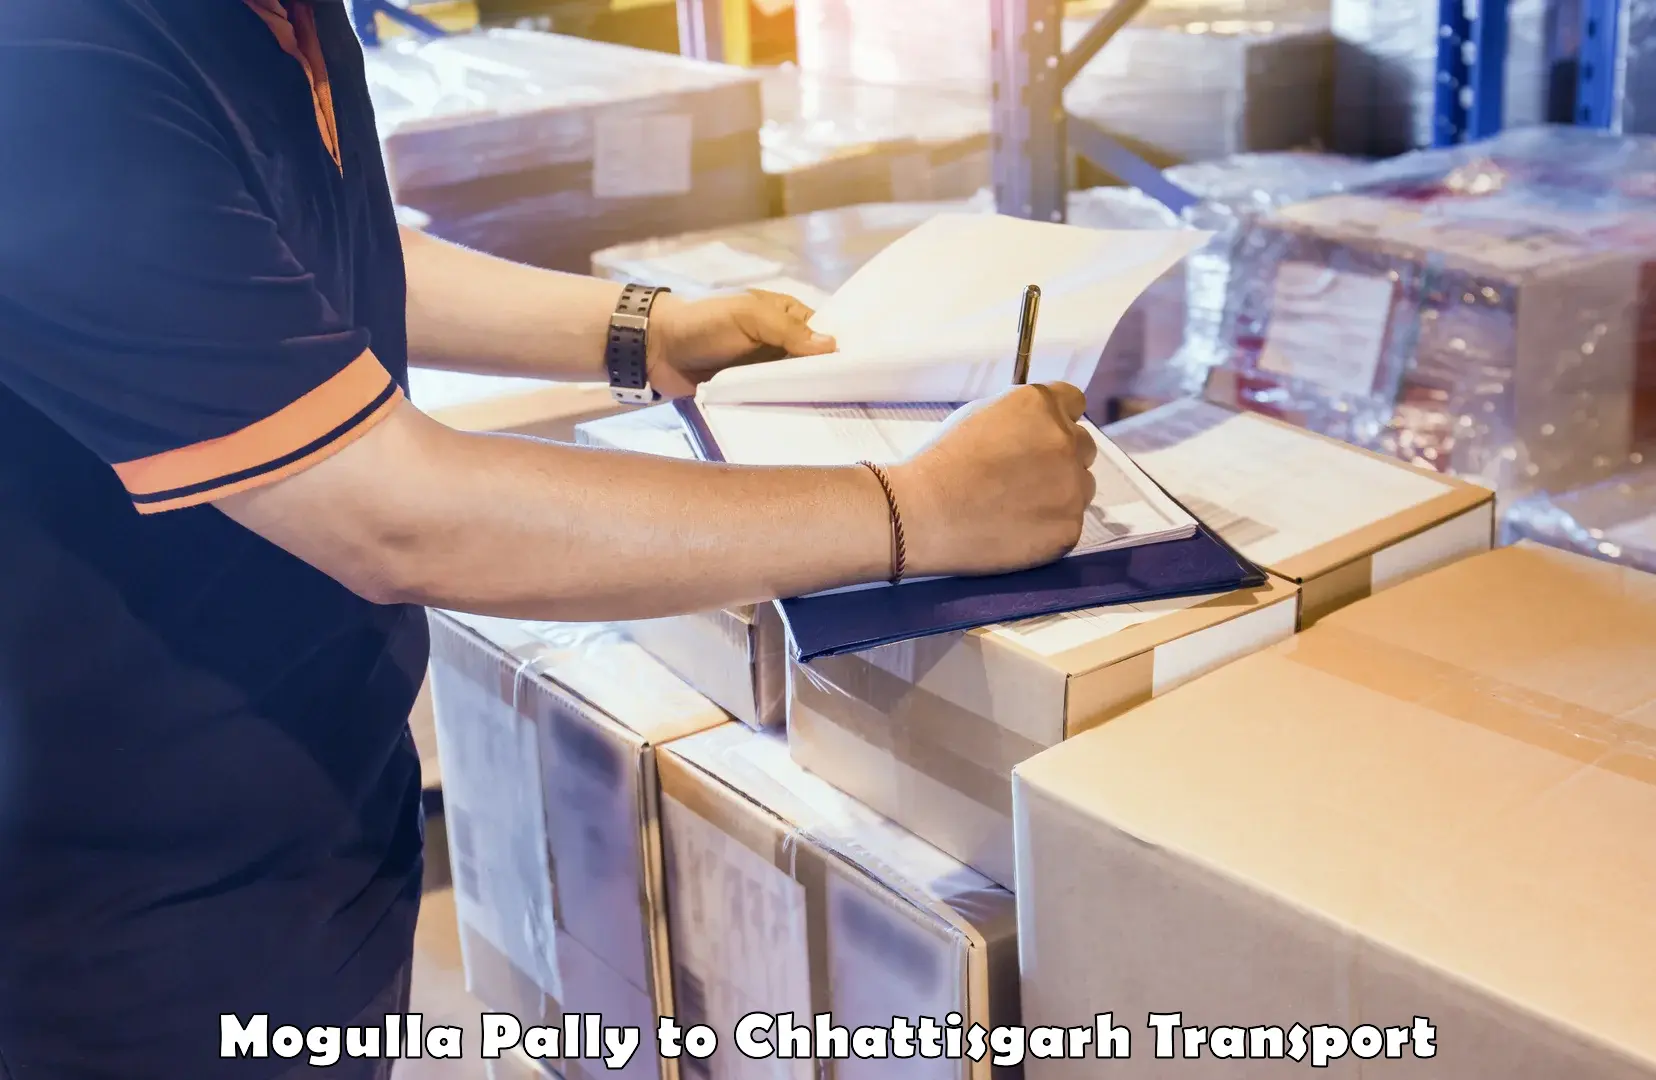 Daily parcel service transport Mogulla Pally to Berla